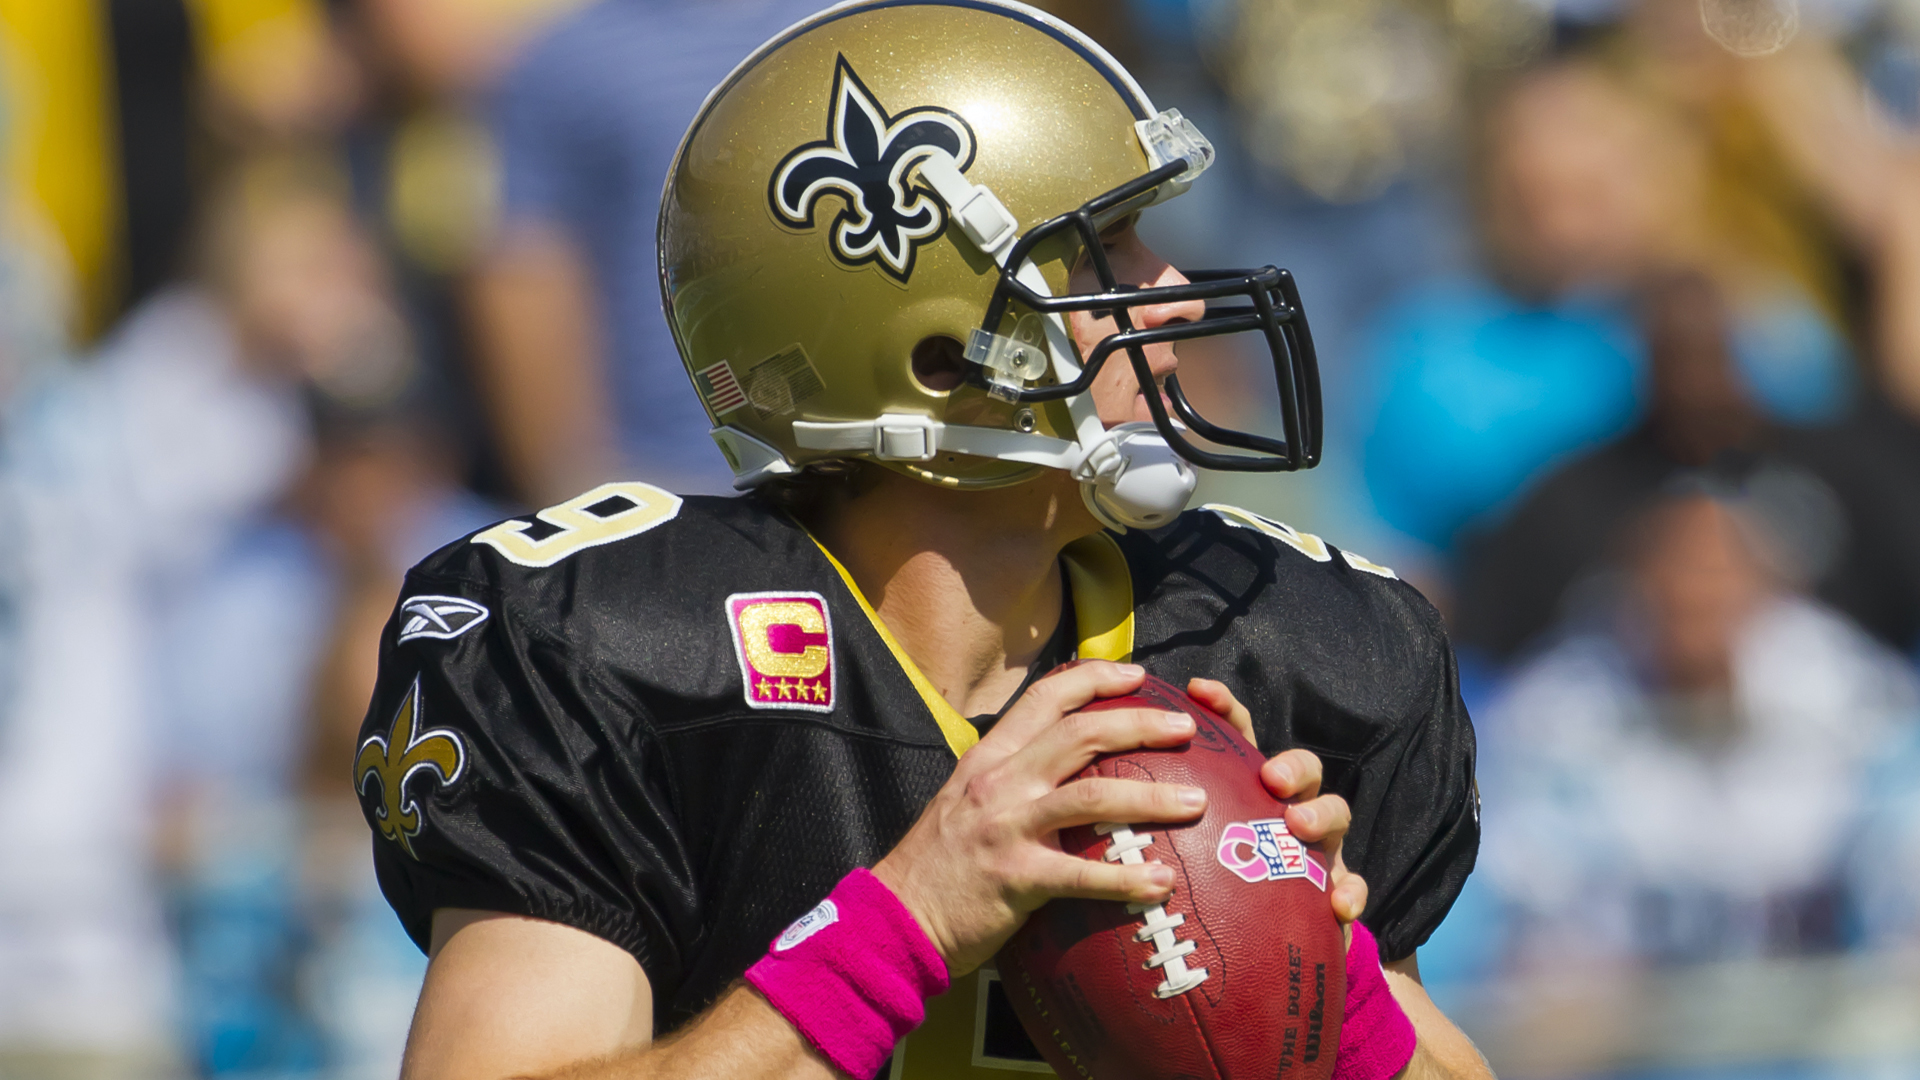 New Orleans Saints' quarterback Drew Brees